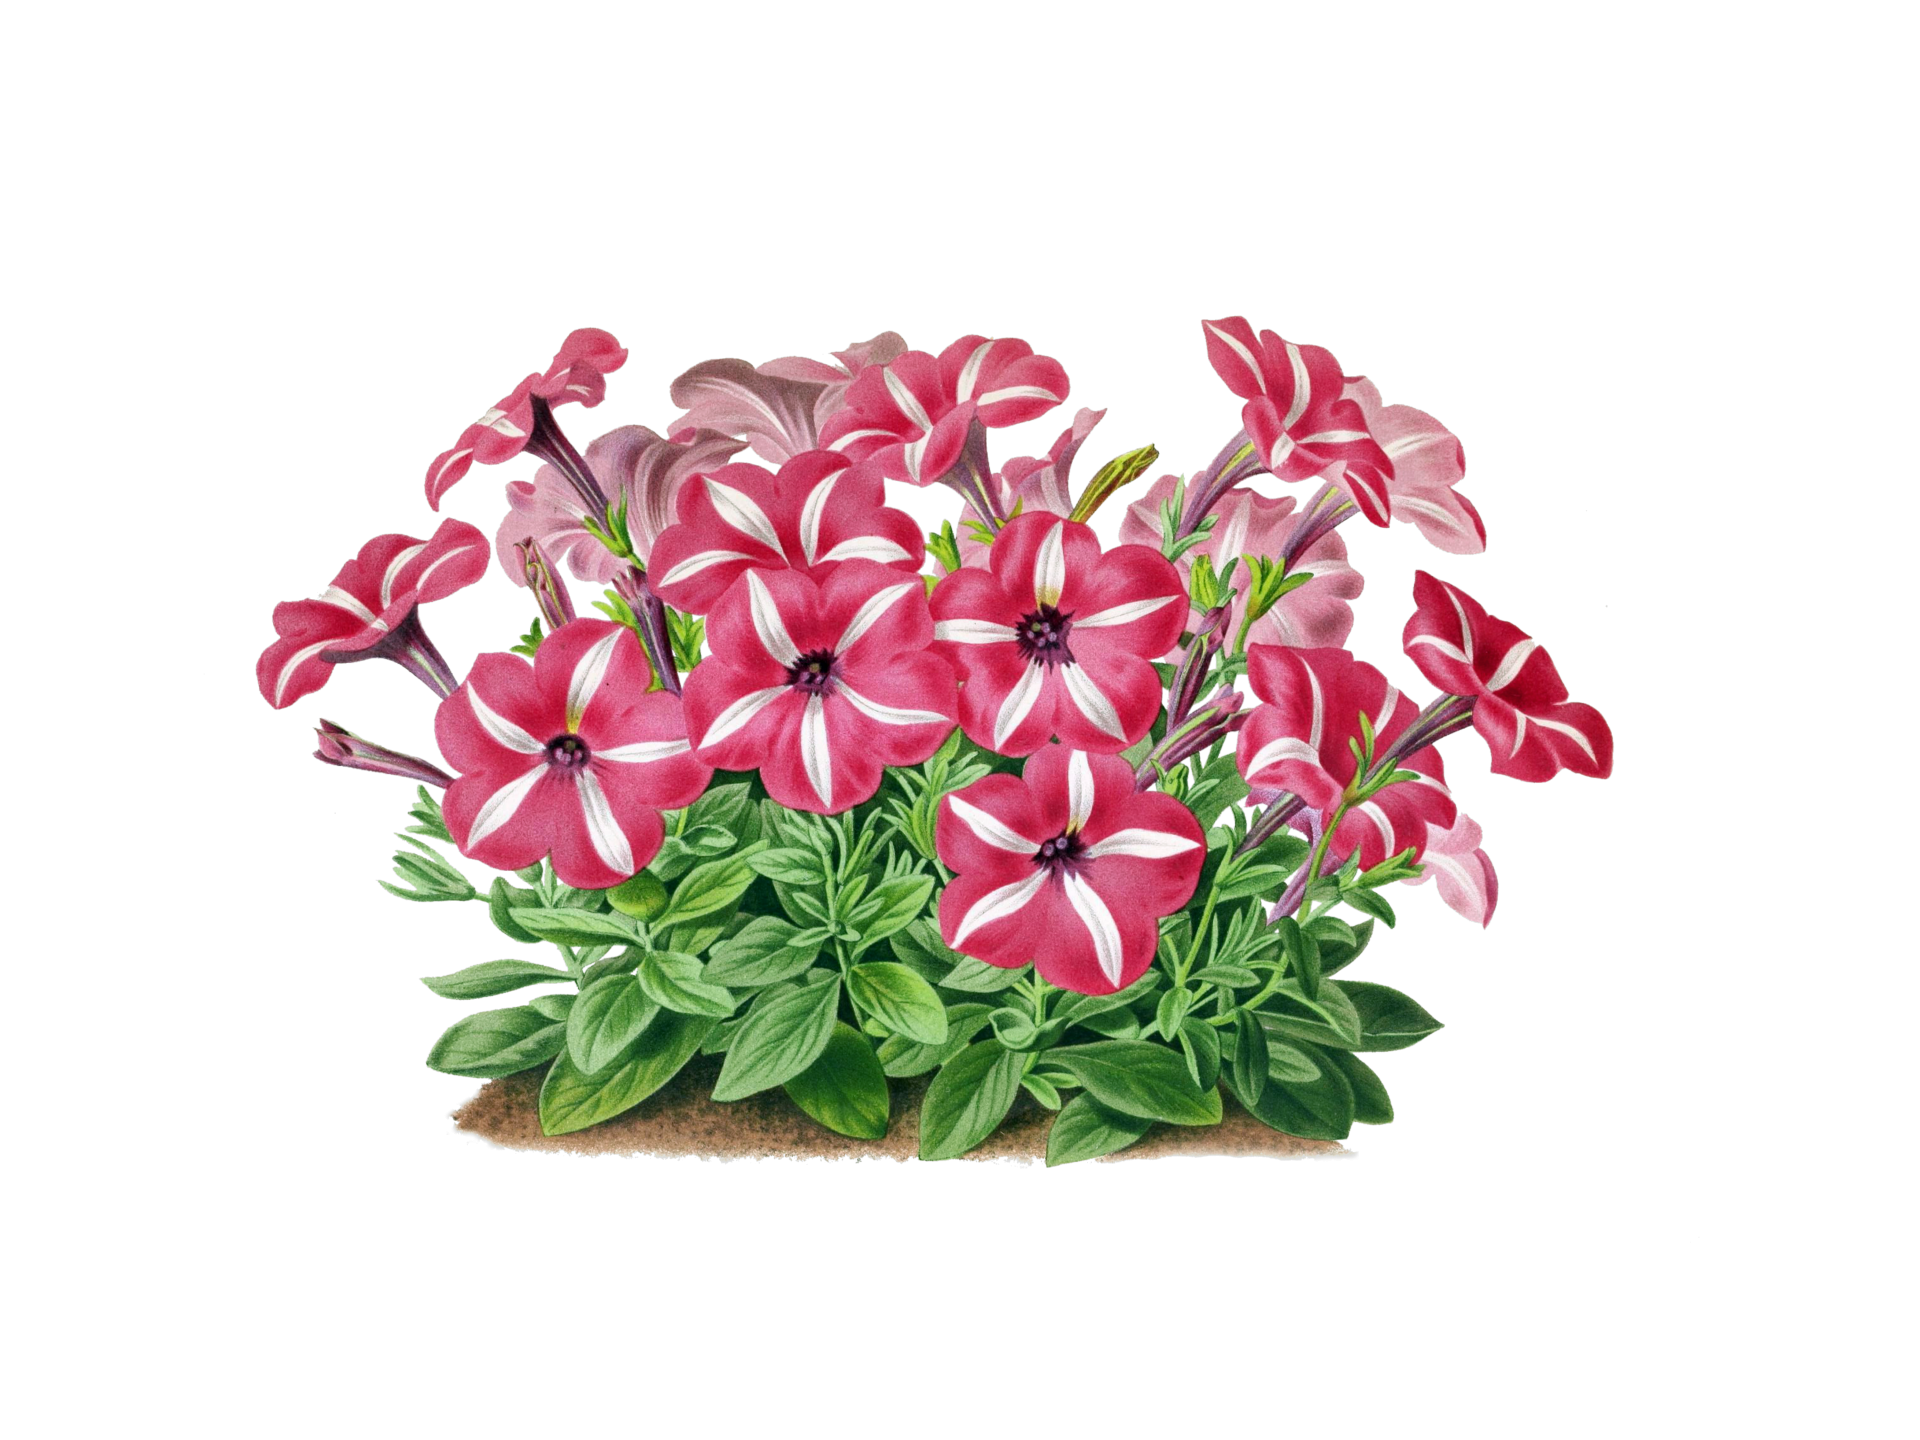 Vintage Floral Petunia Illustration